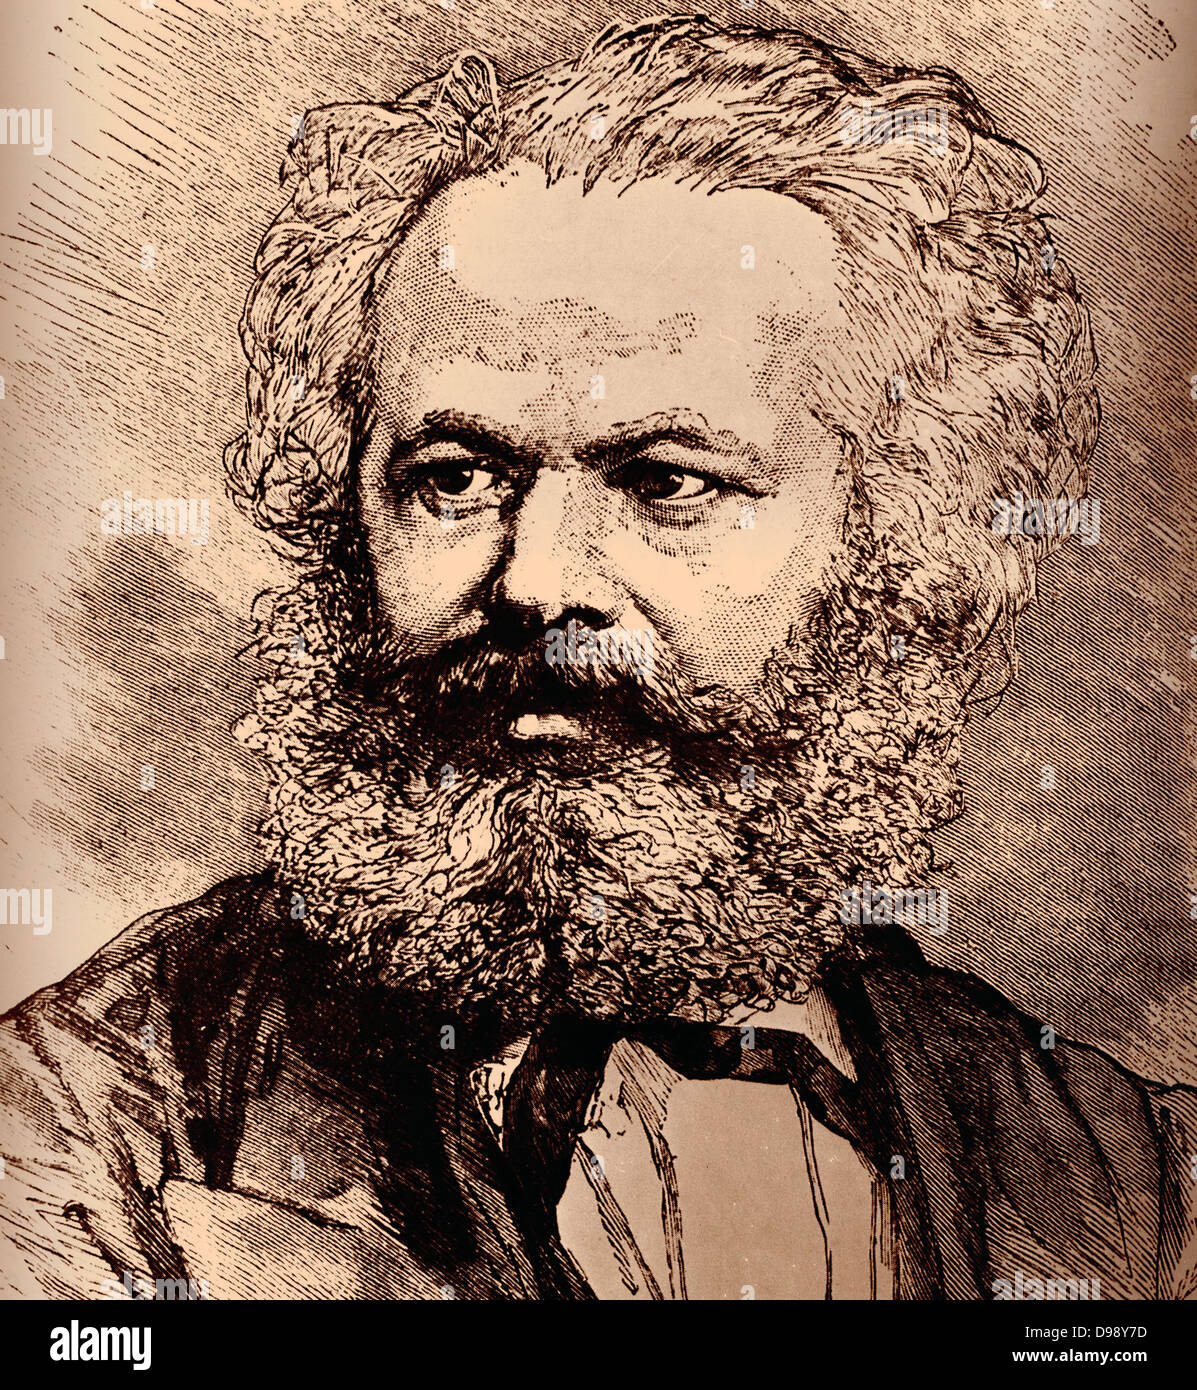 Karl Heinrich Marx (5 mai 1818 - 14 mars 1883) était un philosophe allemand, sociologue, historien de l'économie, journaliste et socialiste révolutionnaire. 1865 Banque D'Images